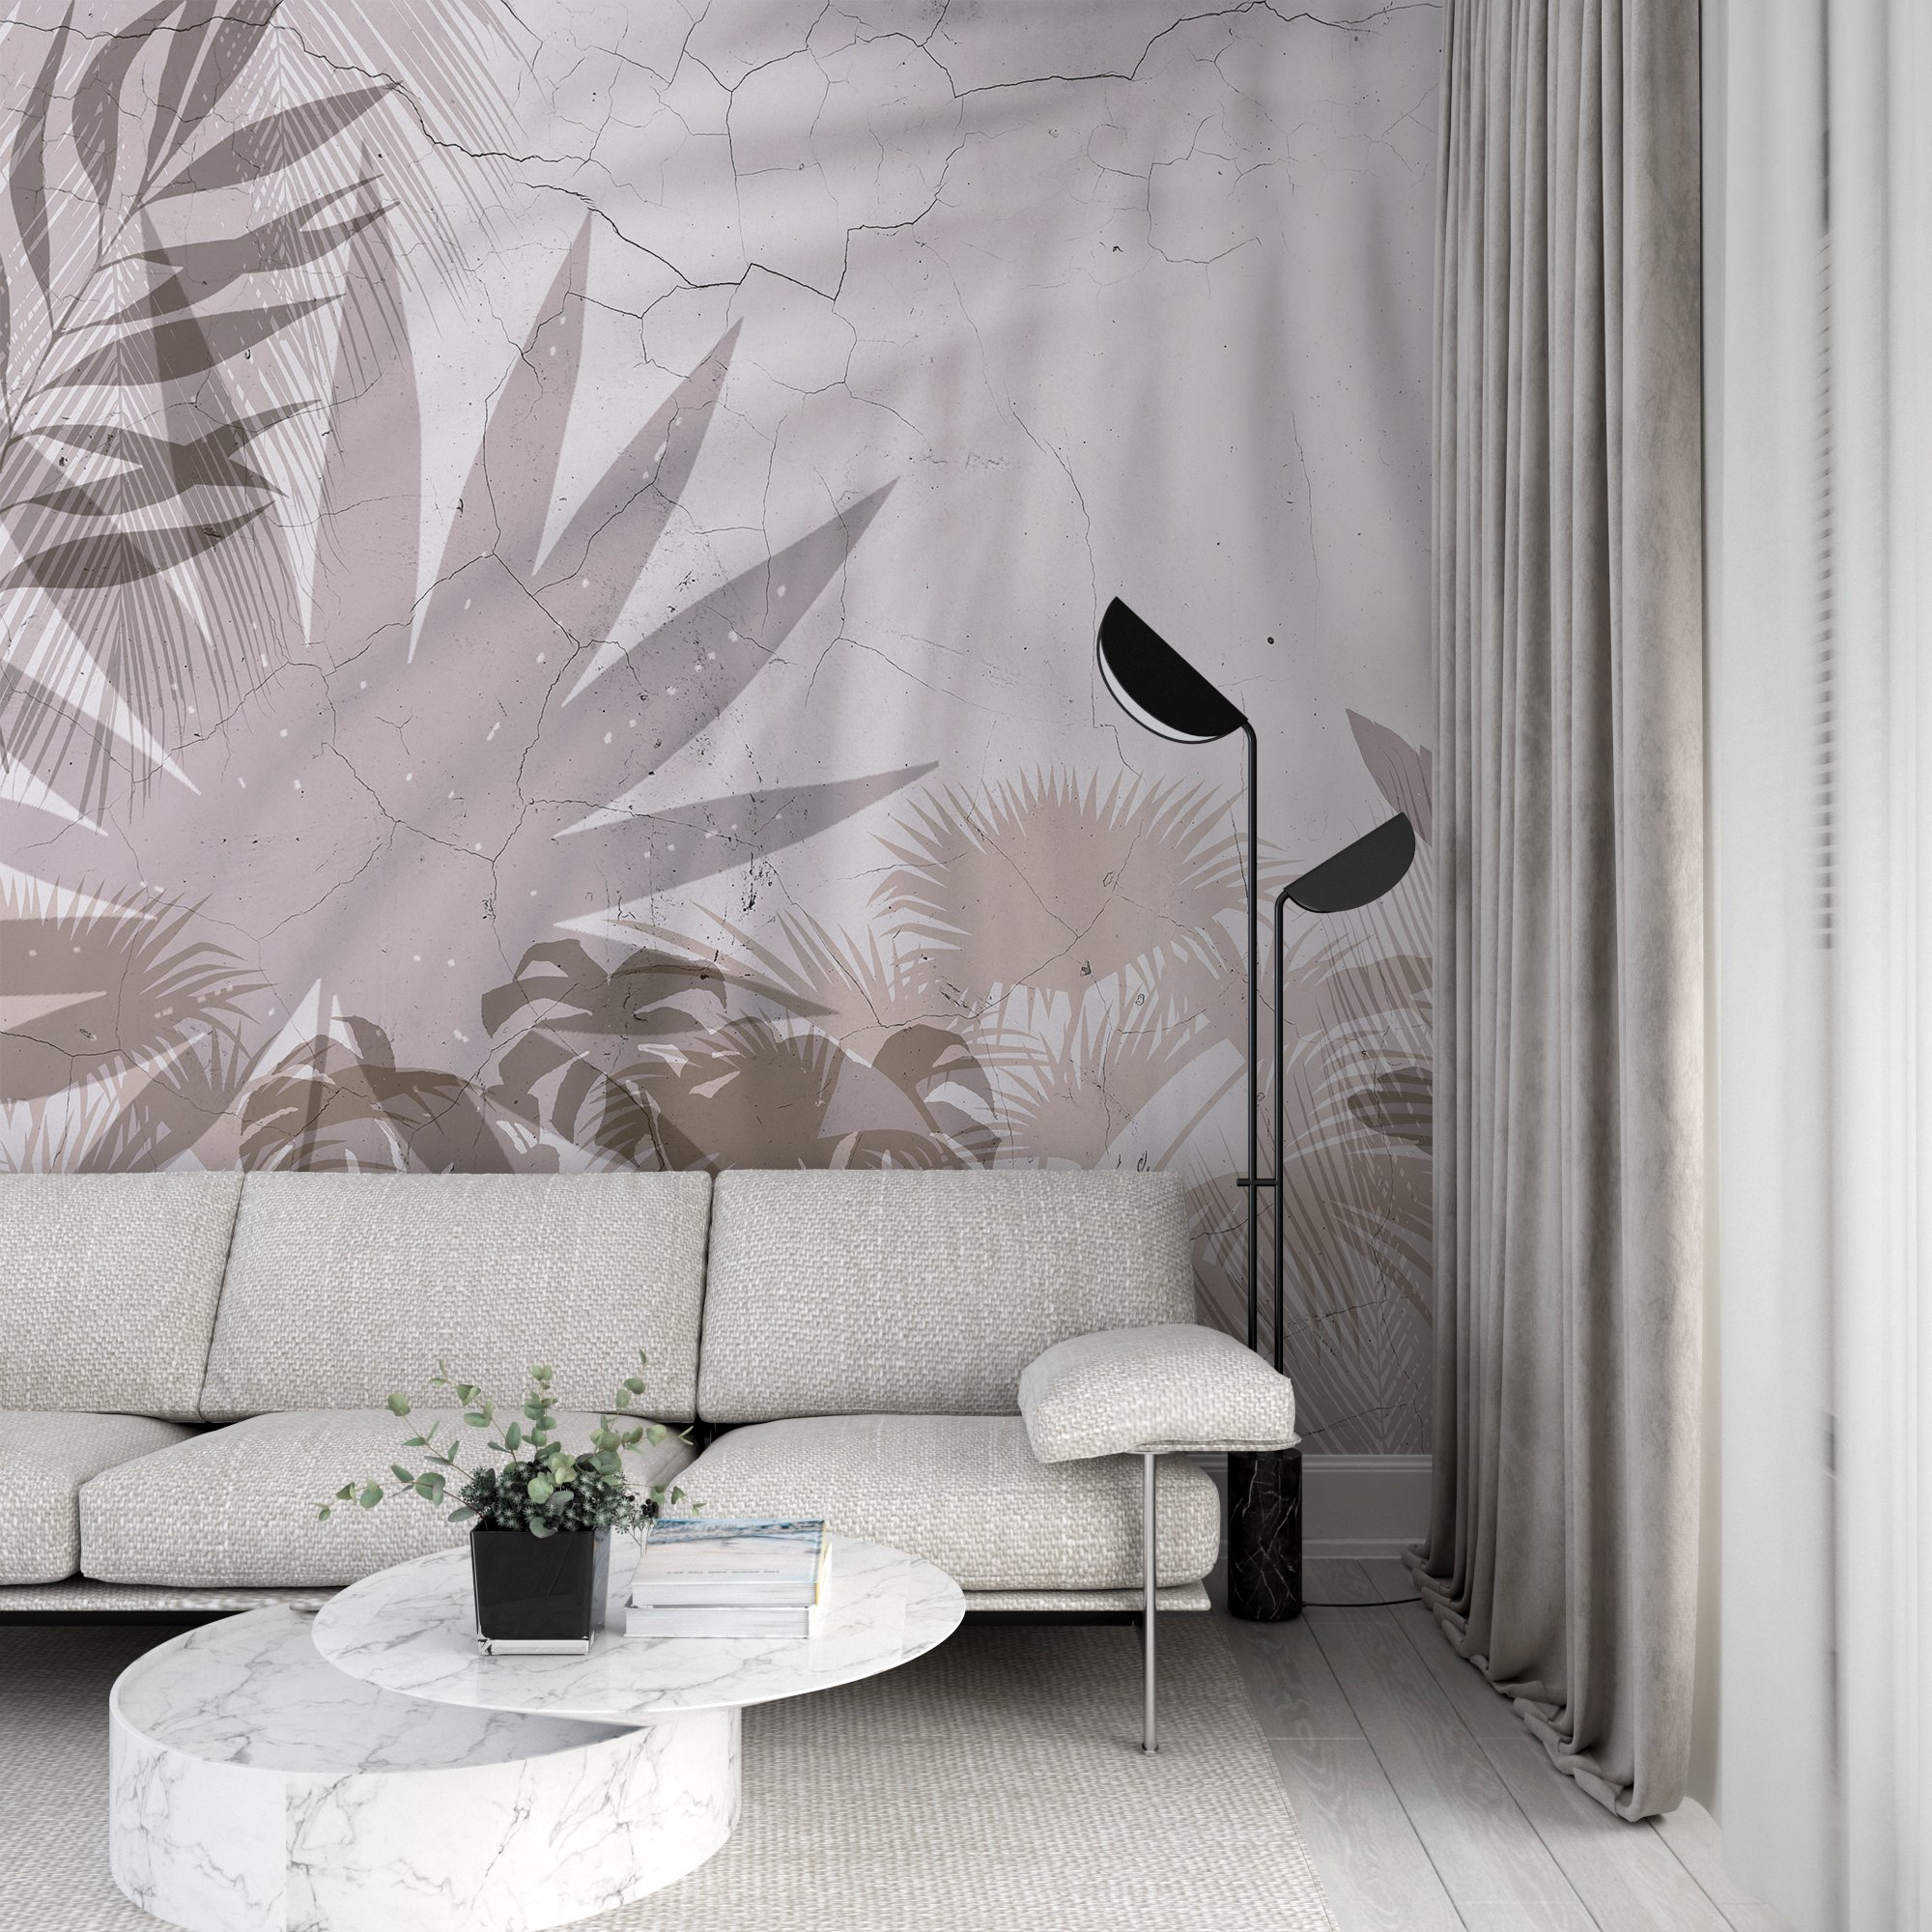 Fototapeta z tropikalnymi liśćmi na popękanej ścianie, w jasnej tonacji Cień Na Ścianie - główne zdjęcie produktu